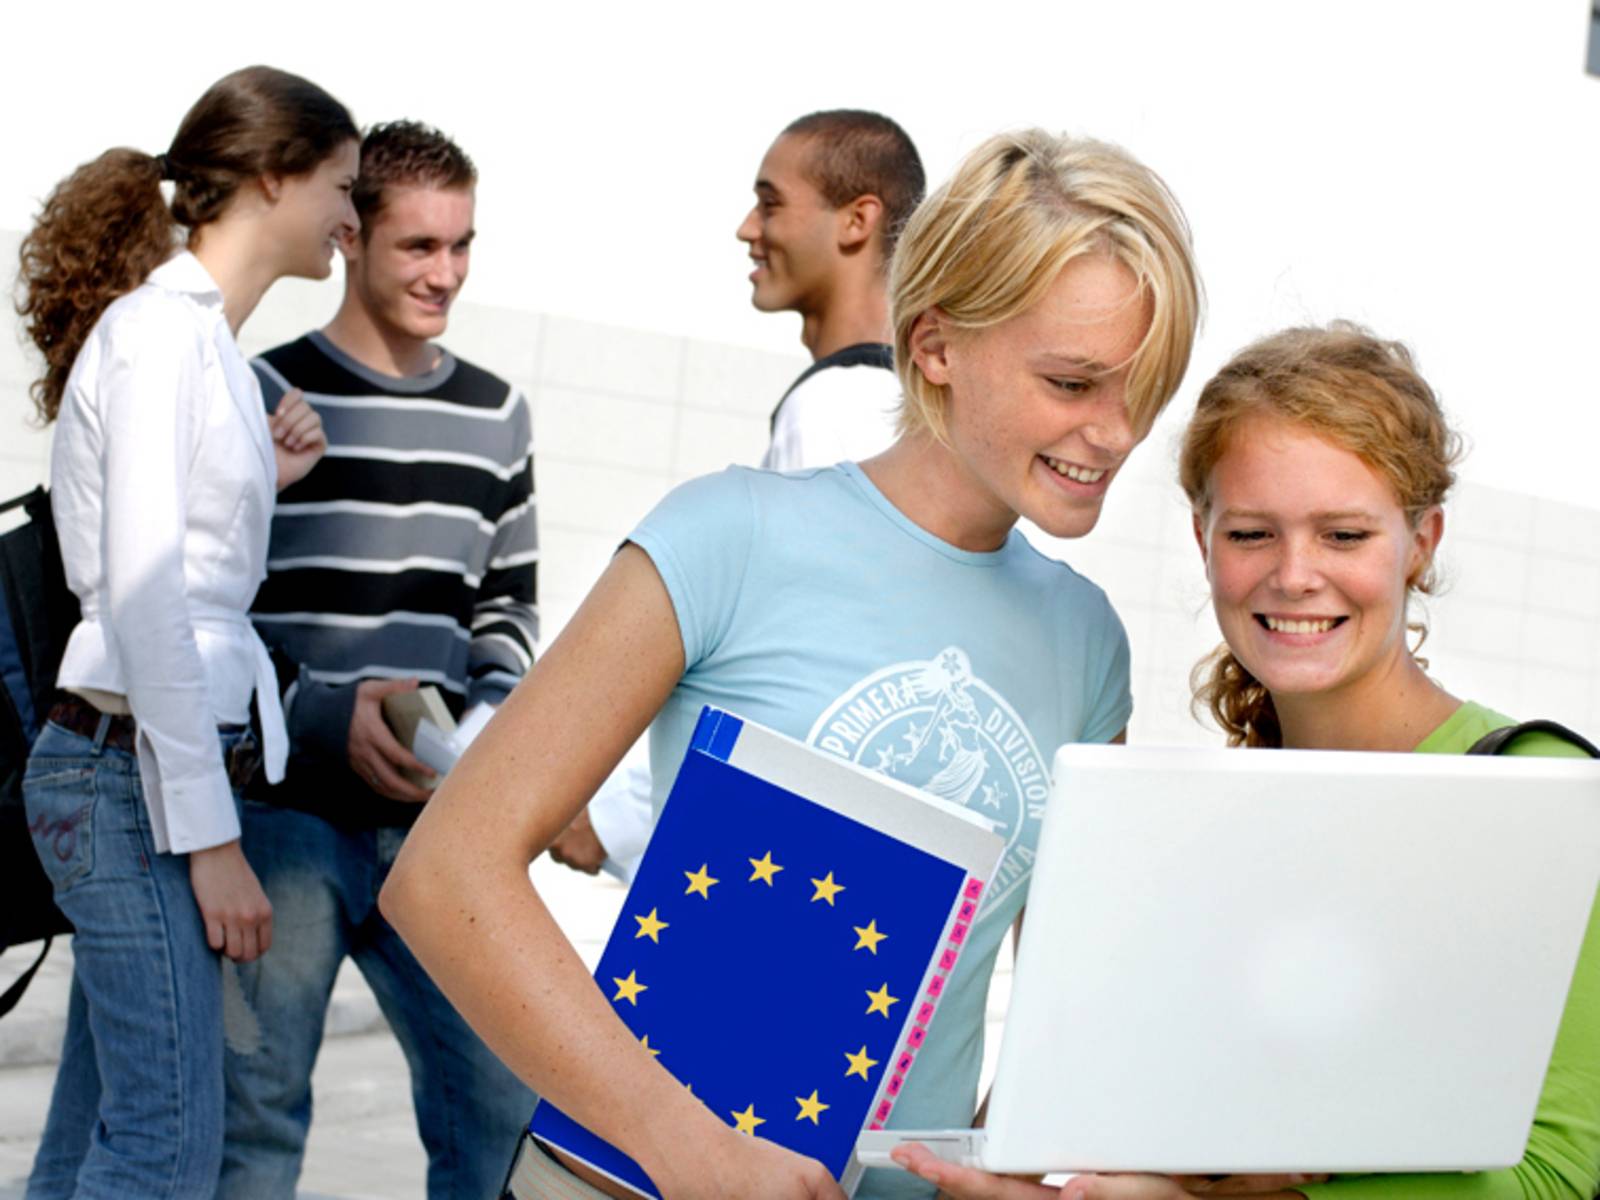 Junge Menschen im Gespräch, eine Person trägt eine Mappe mit EU-Symbol